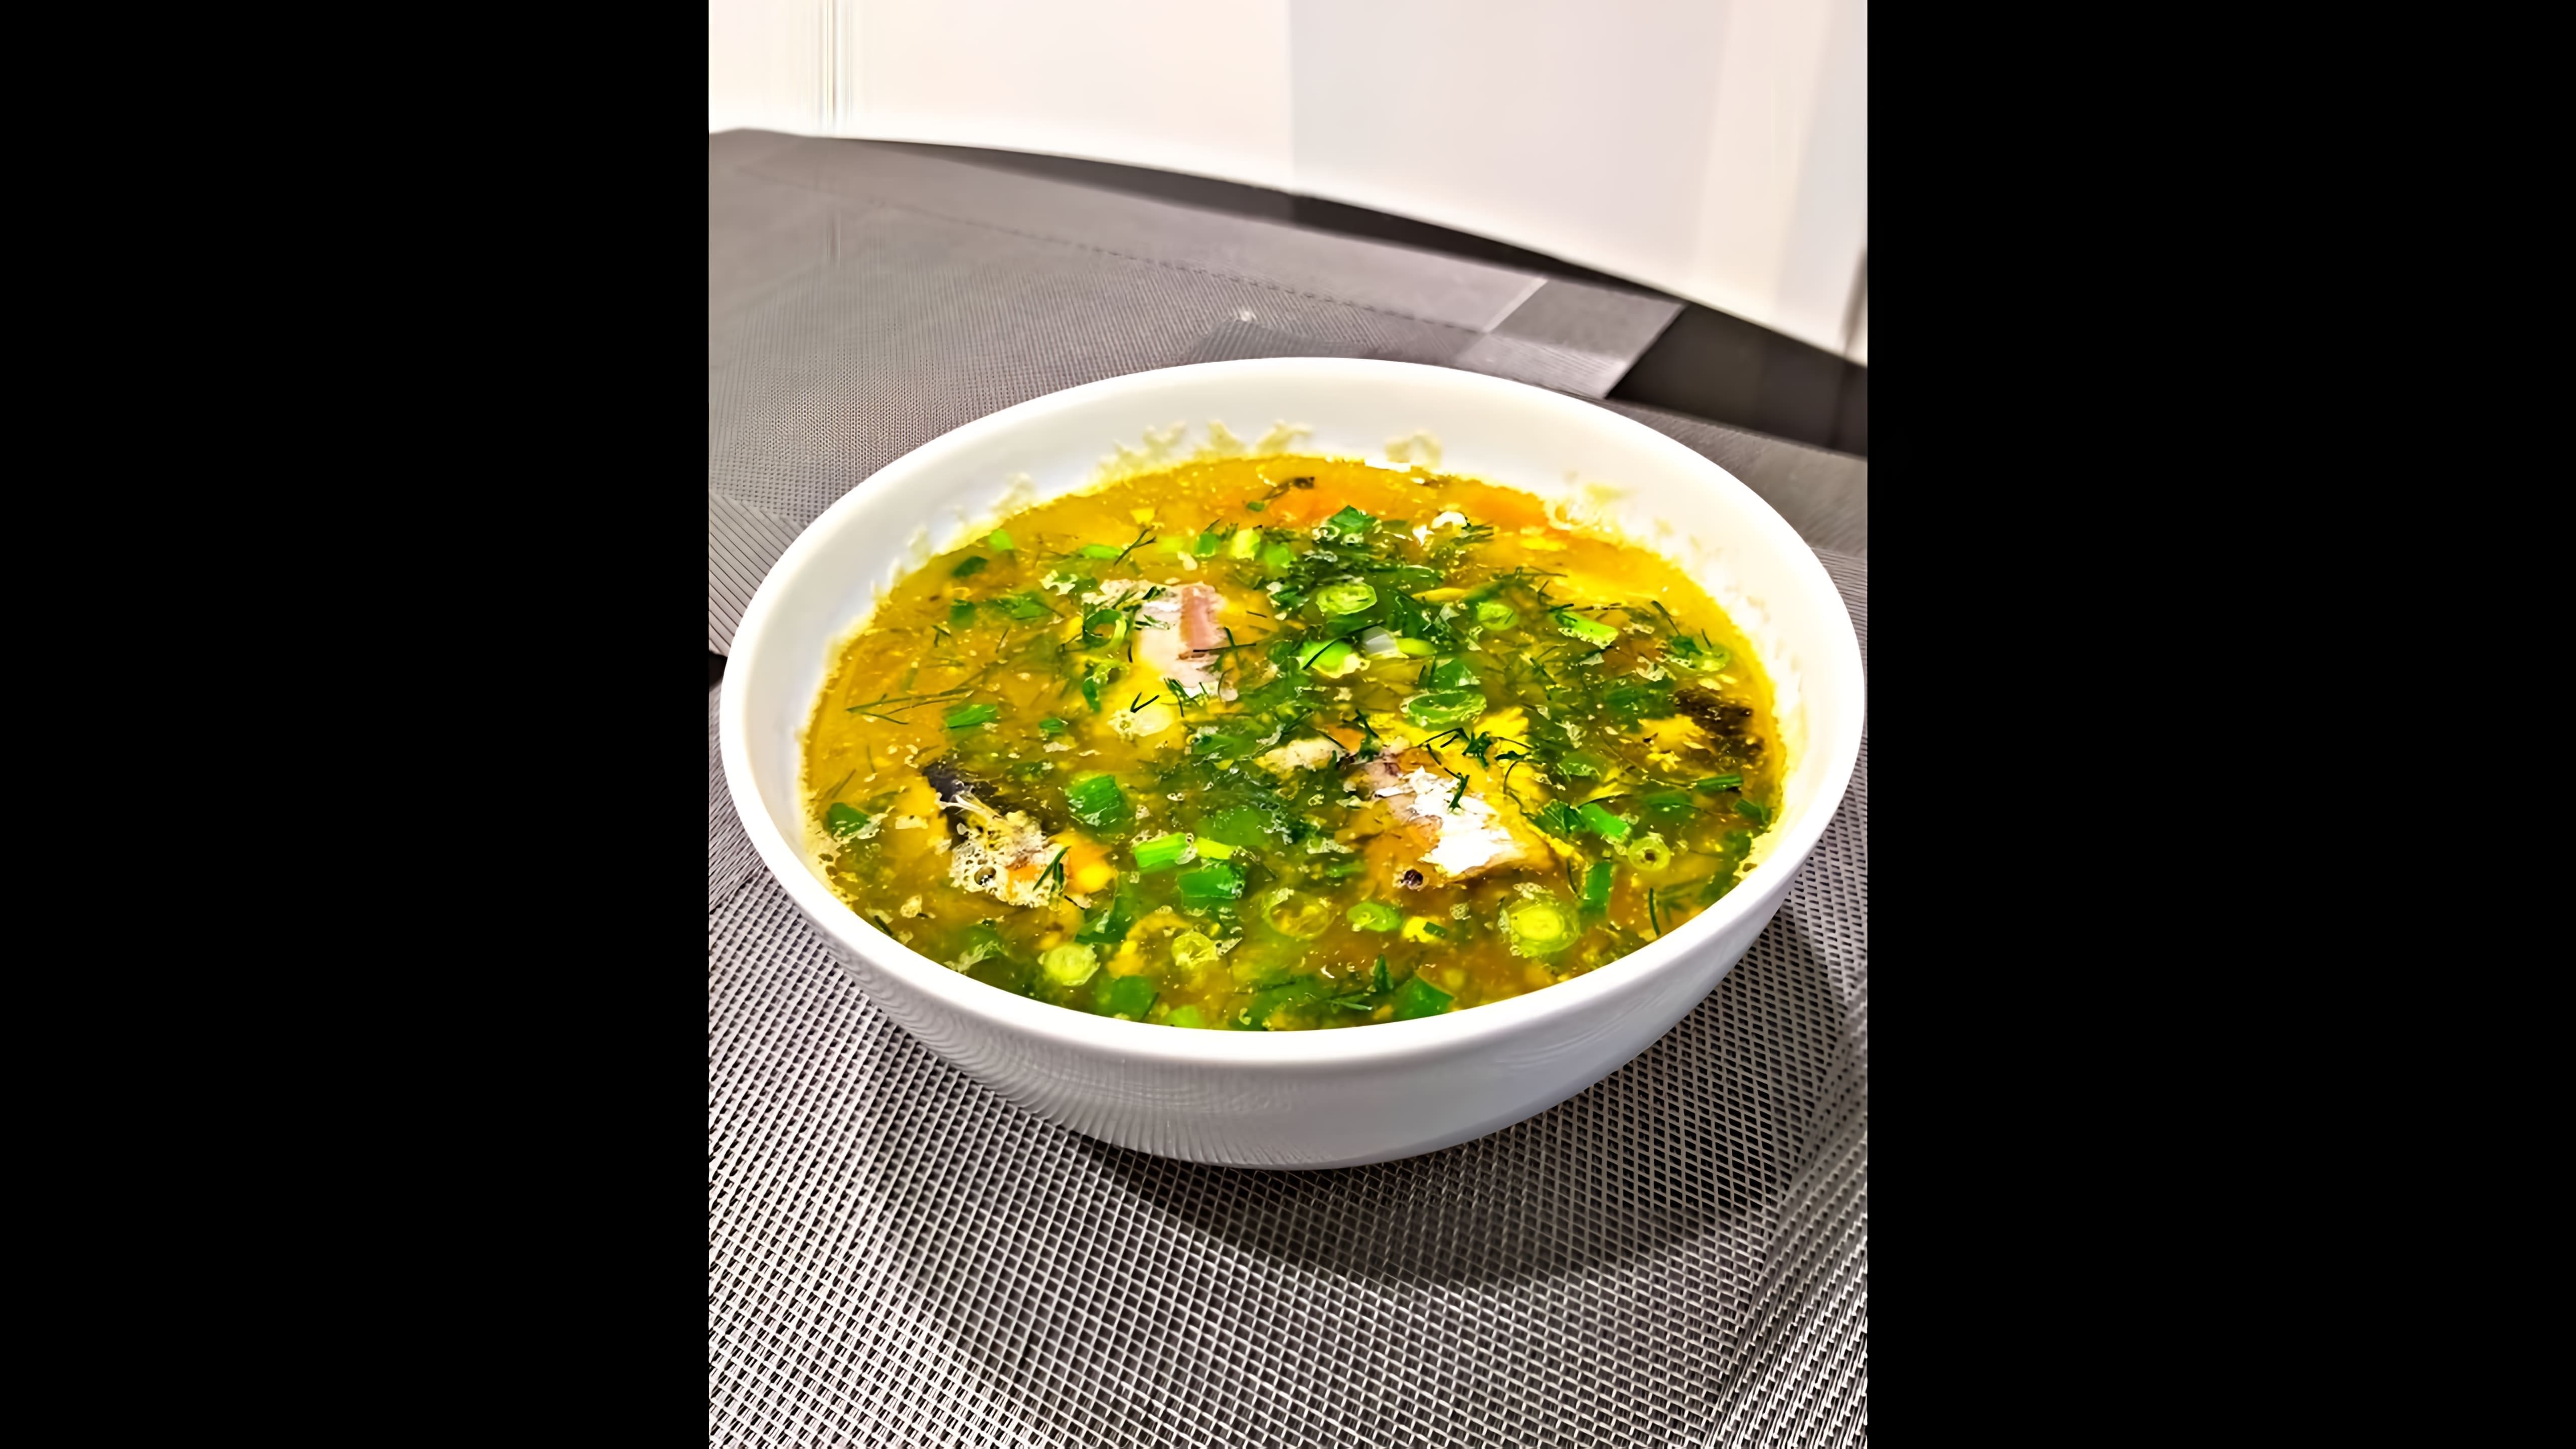 "Очень простой в приготовлении и очень вкусный суп" - это видео-ролик, который демонстрирует процесс приготовления супа из рыбной консервы